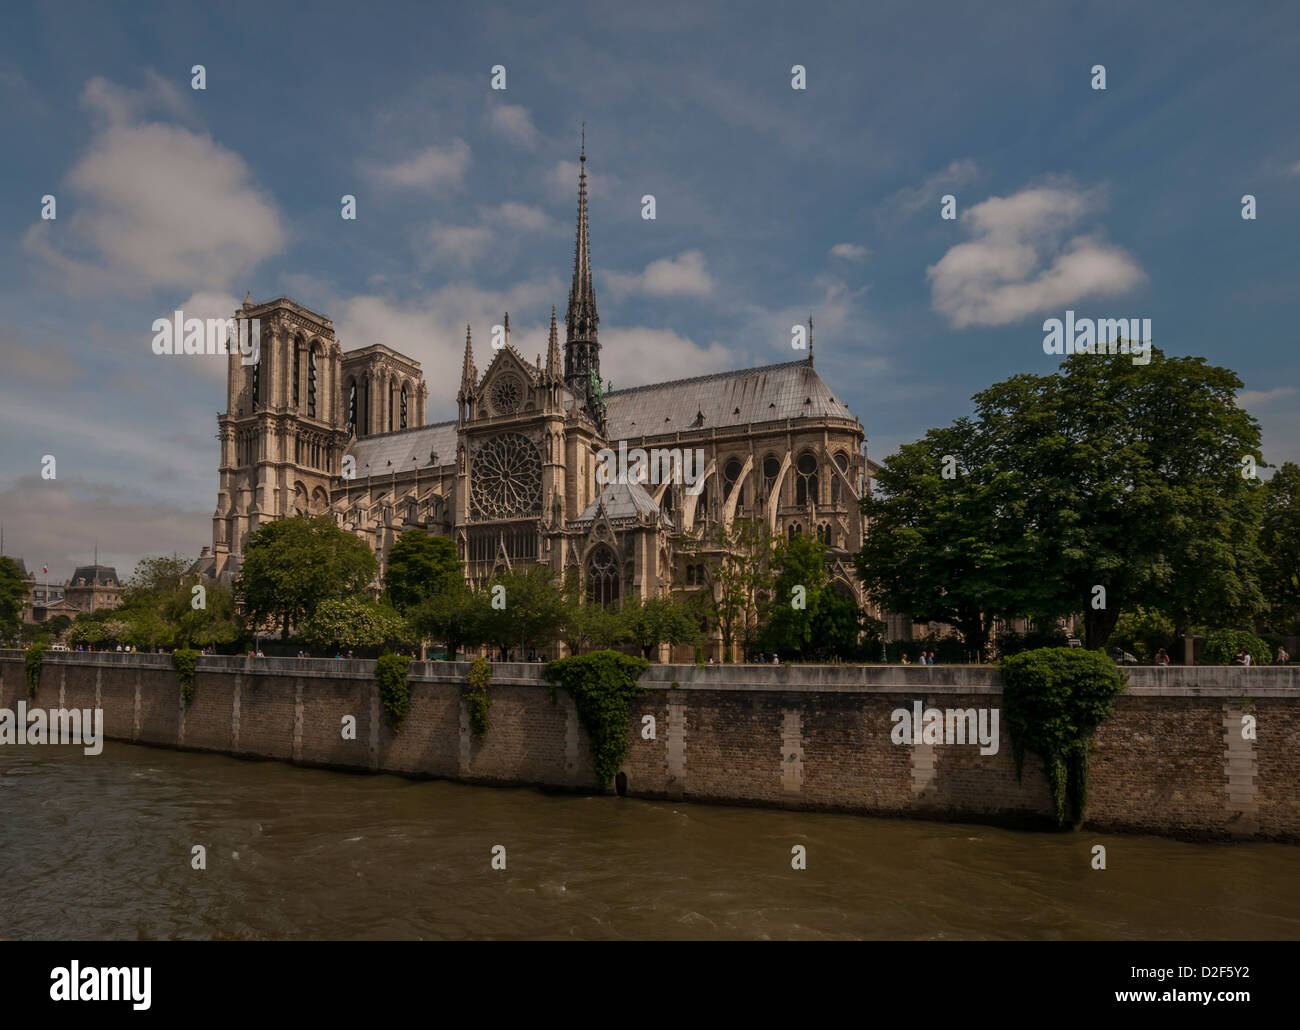 Cathedral of Notre Dame de Paris,France Stock Photo